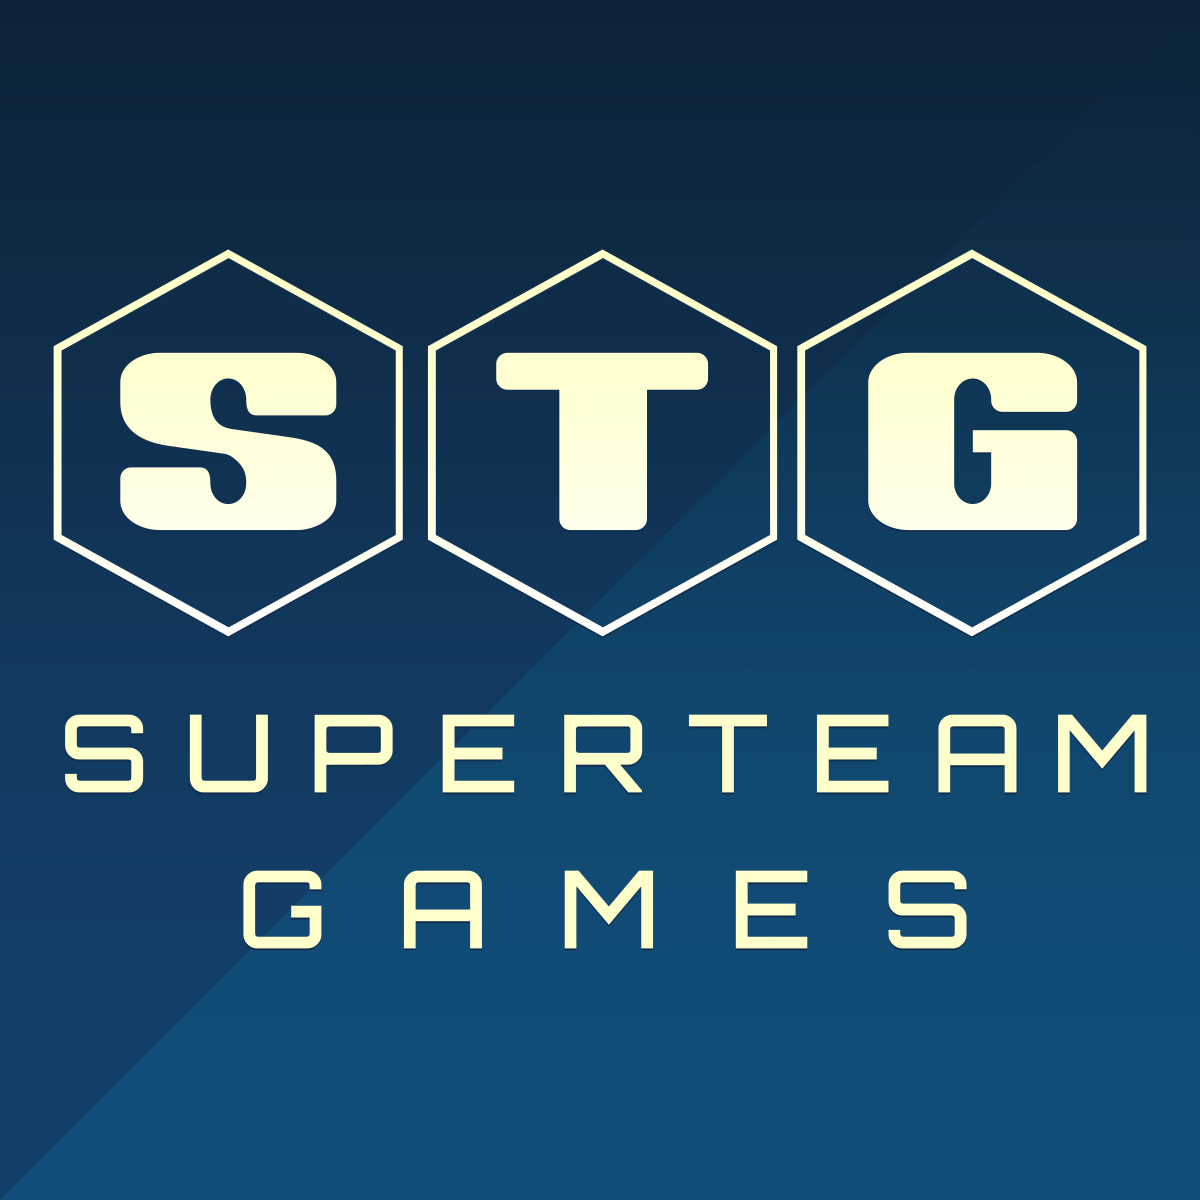 SuperTeam Games